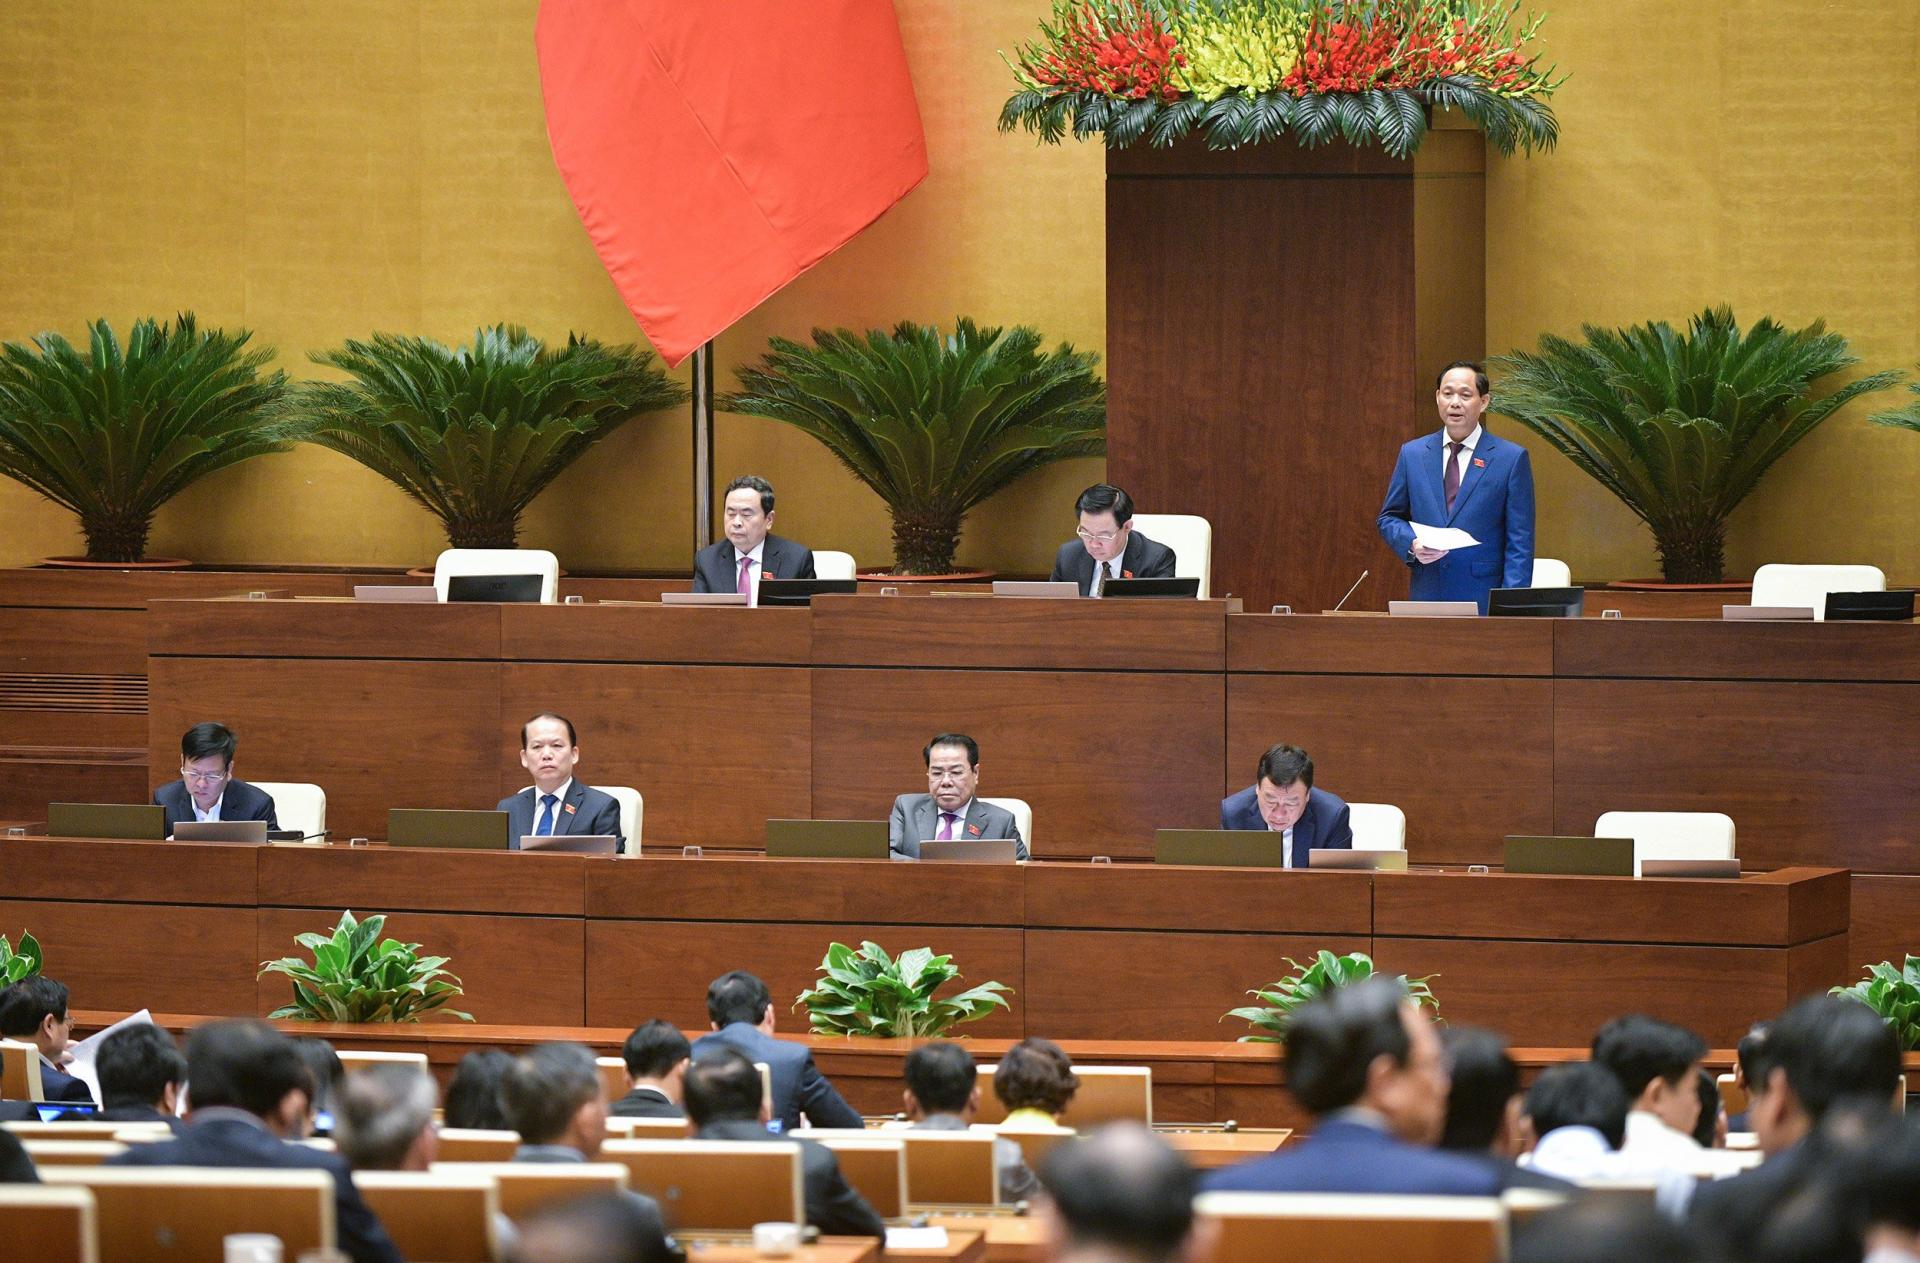 Phó Chủ tịch Quốc hội Trần Quang Phương điều hành phiên họp. Ảnh: Quochoi.vn